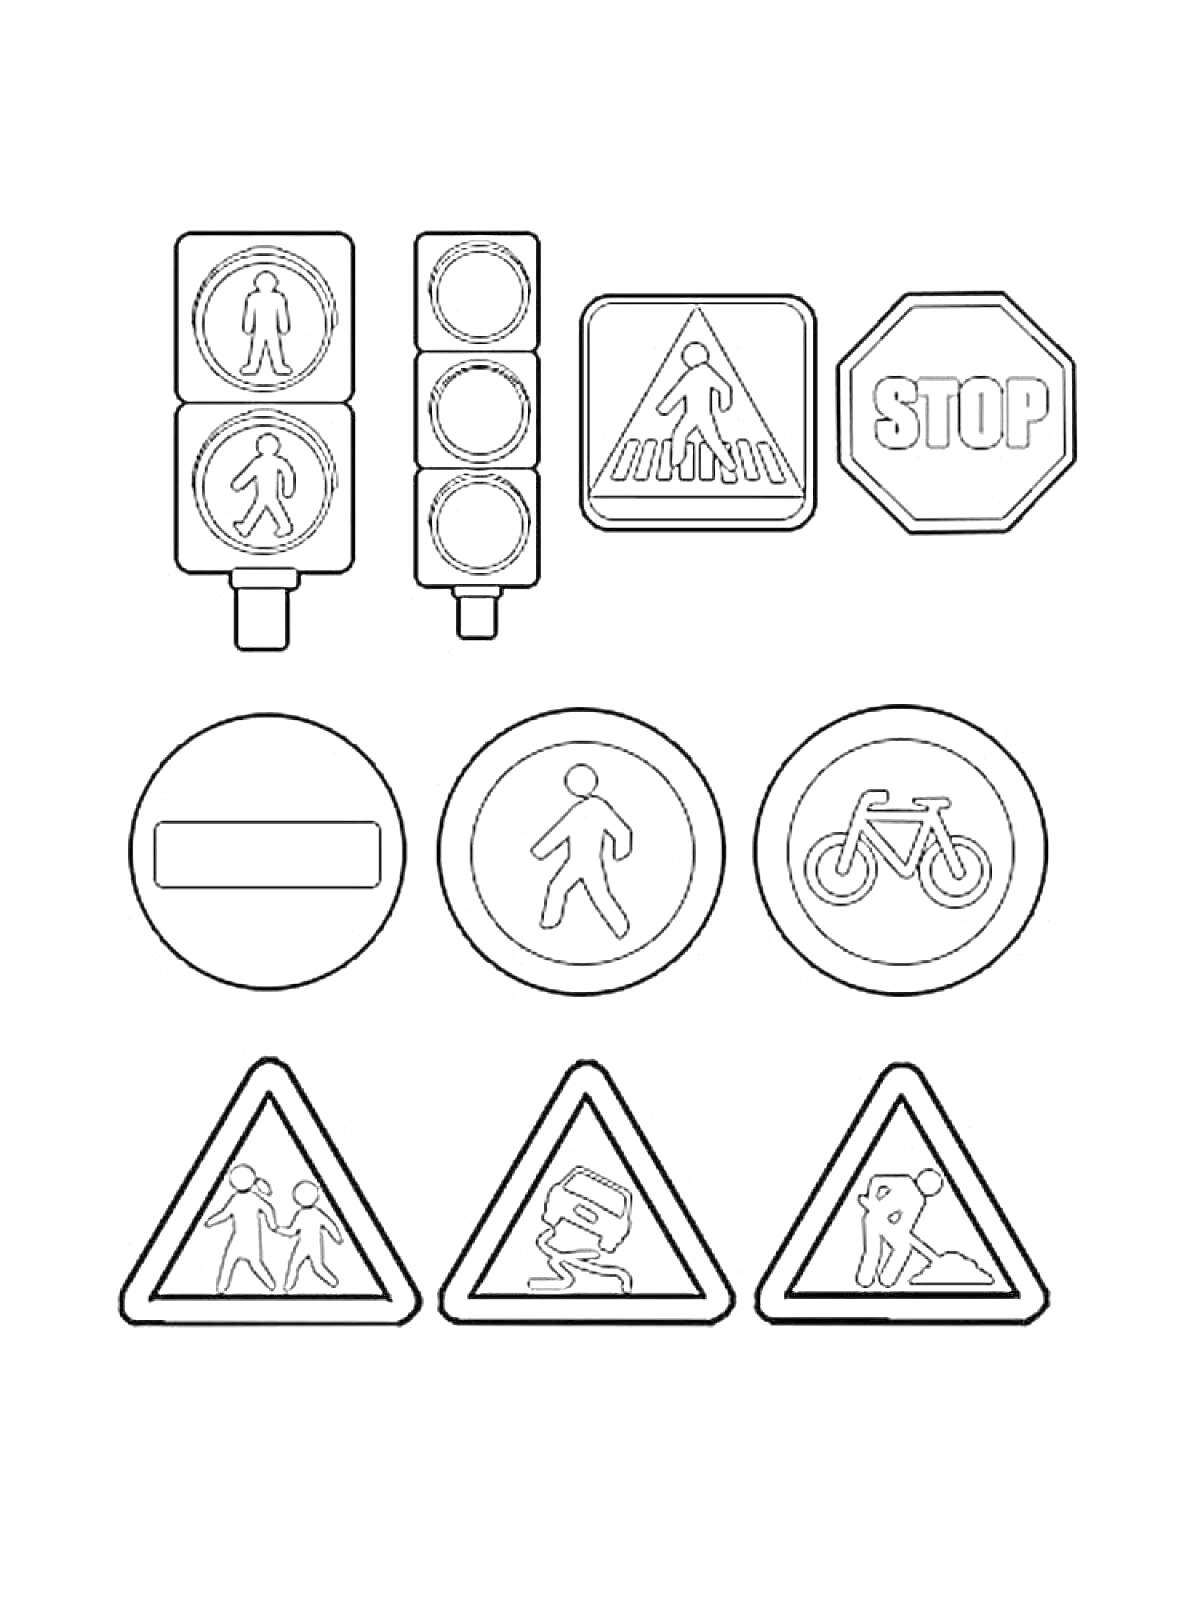 Дорожные знаки: светофор, пешеходный переход, стоп, кирпич, пешеходная зона, велопешеходная зона, дети, ремонтные работы